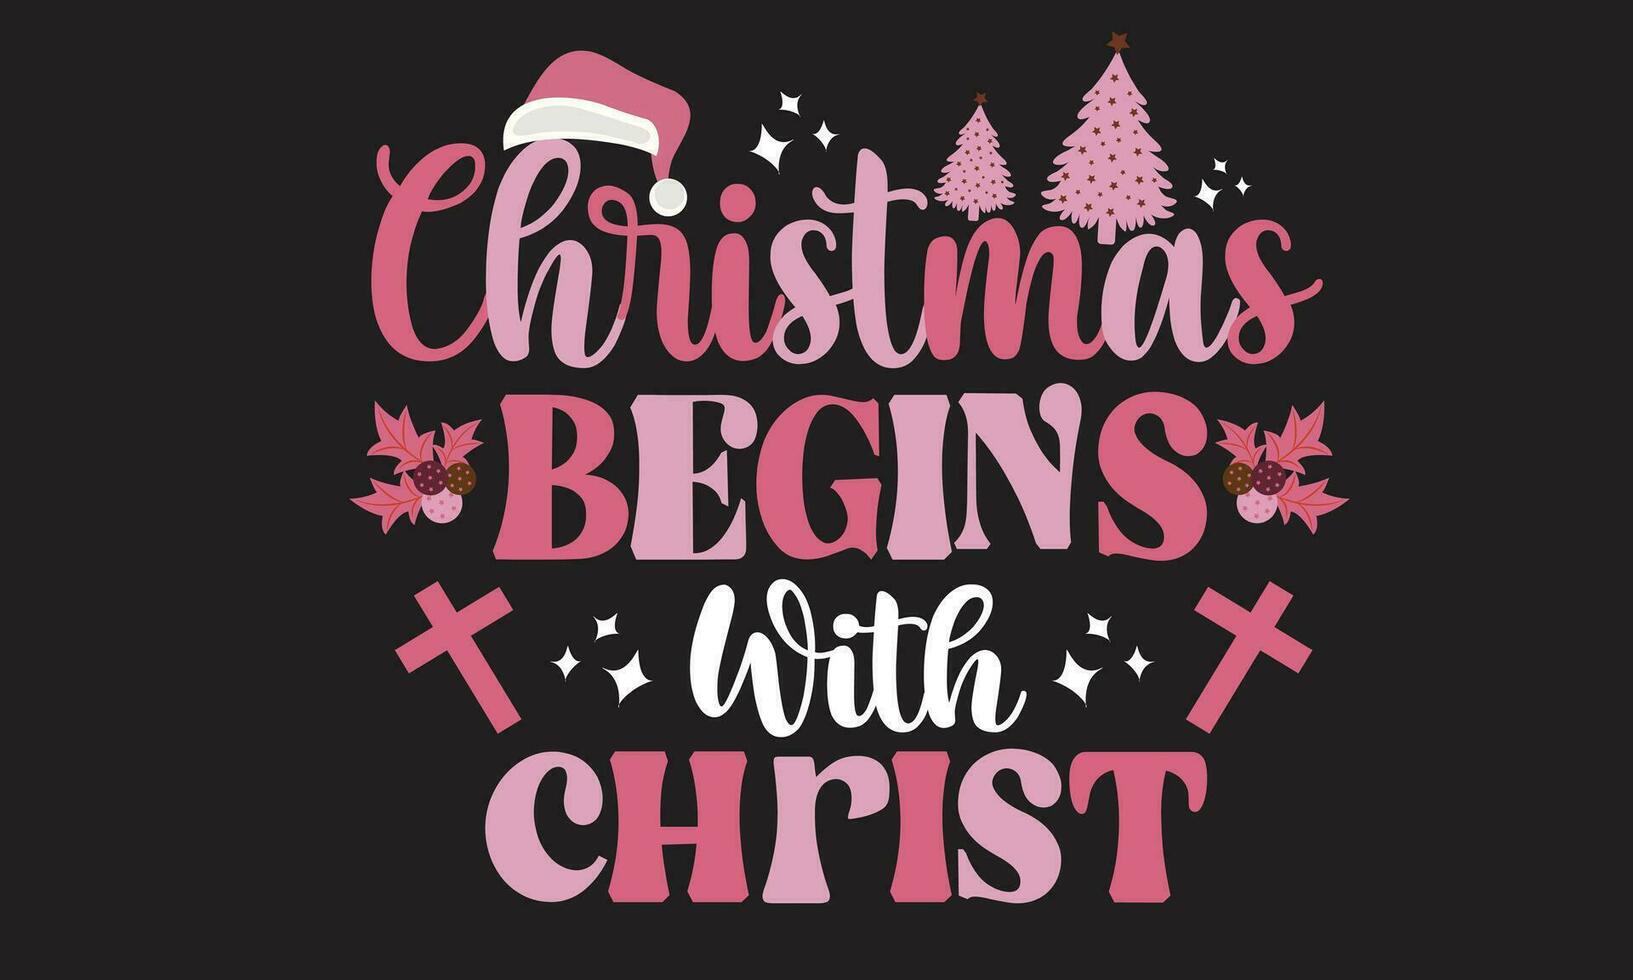 Noël commence avec Christ rétro T-shirt conception vecteur